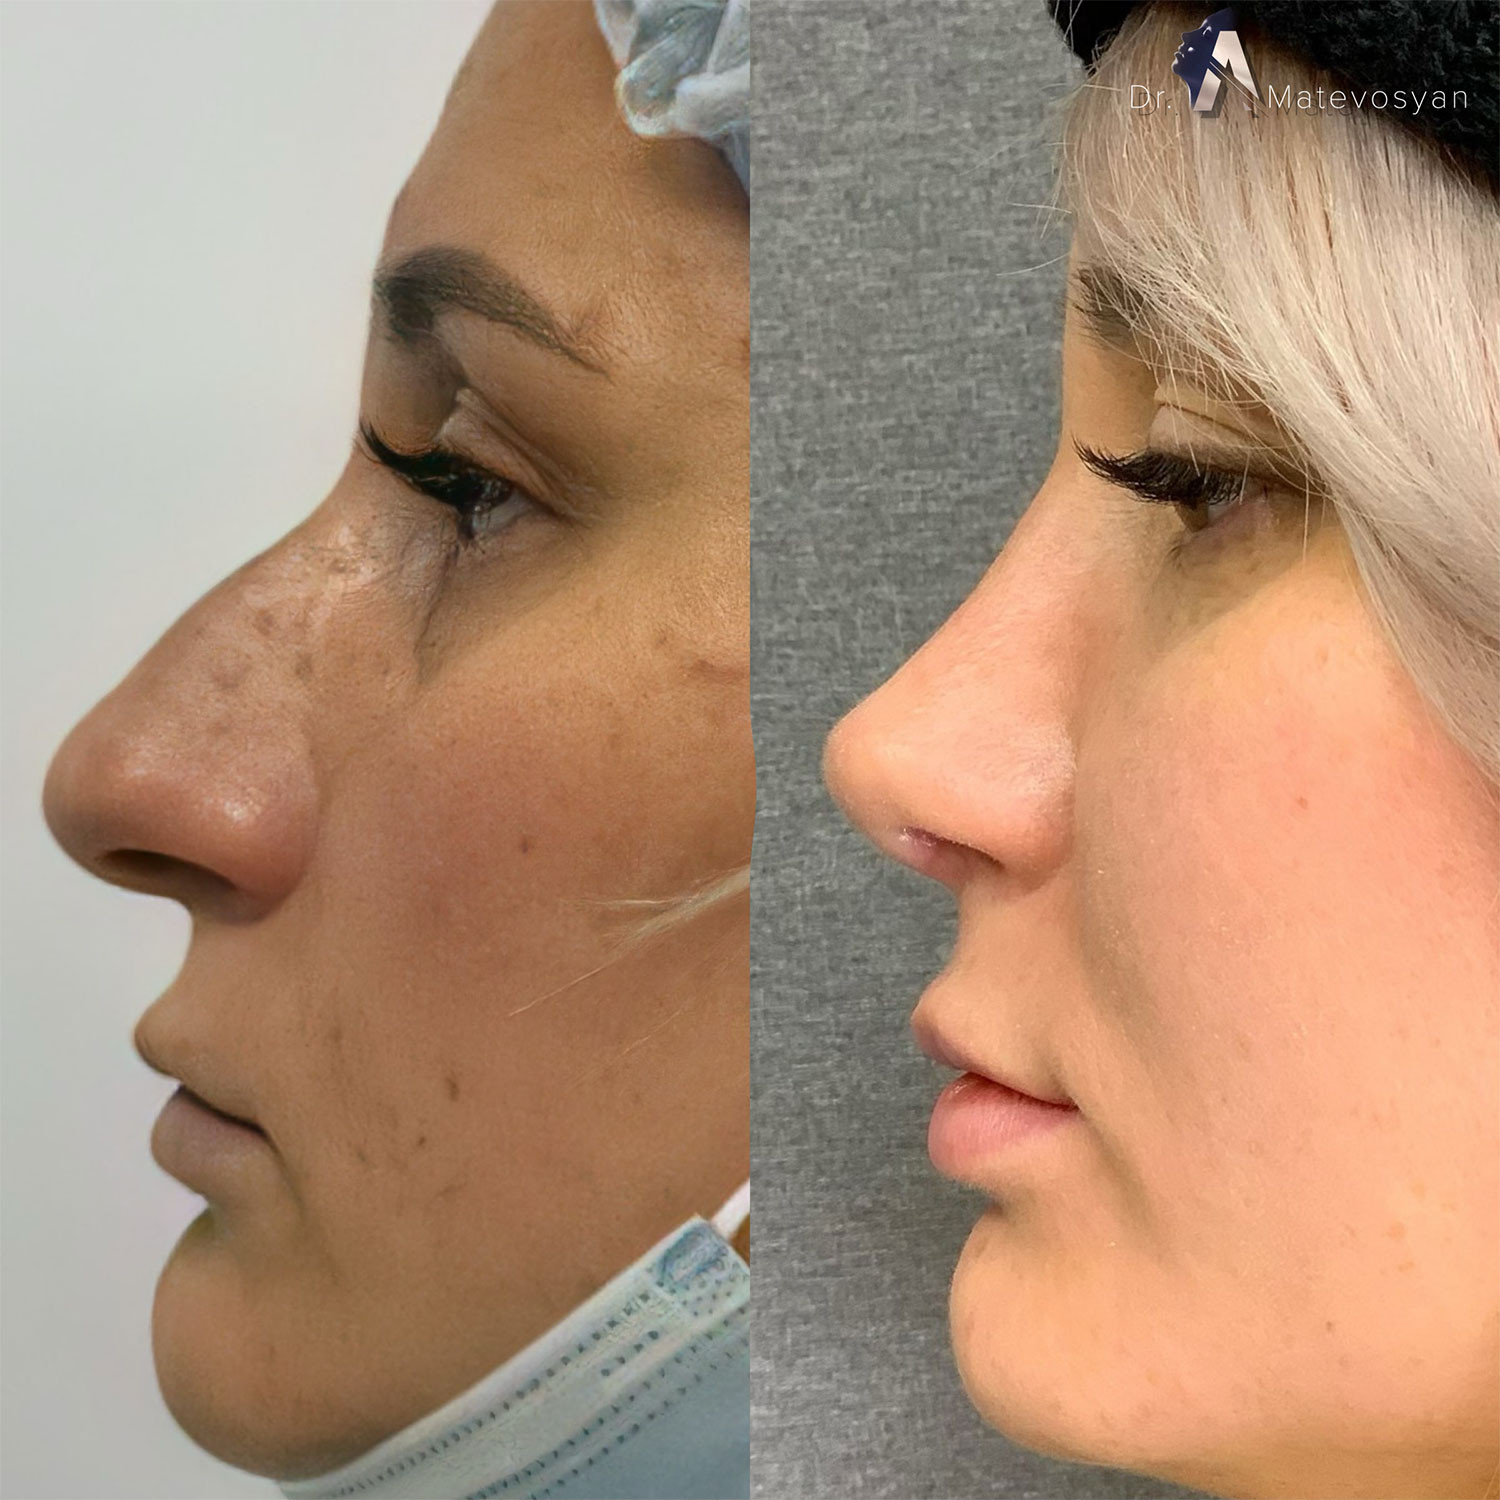 фото ринопластики до и после нос